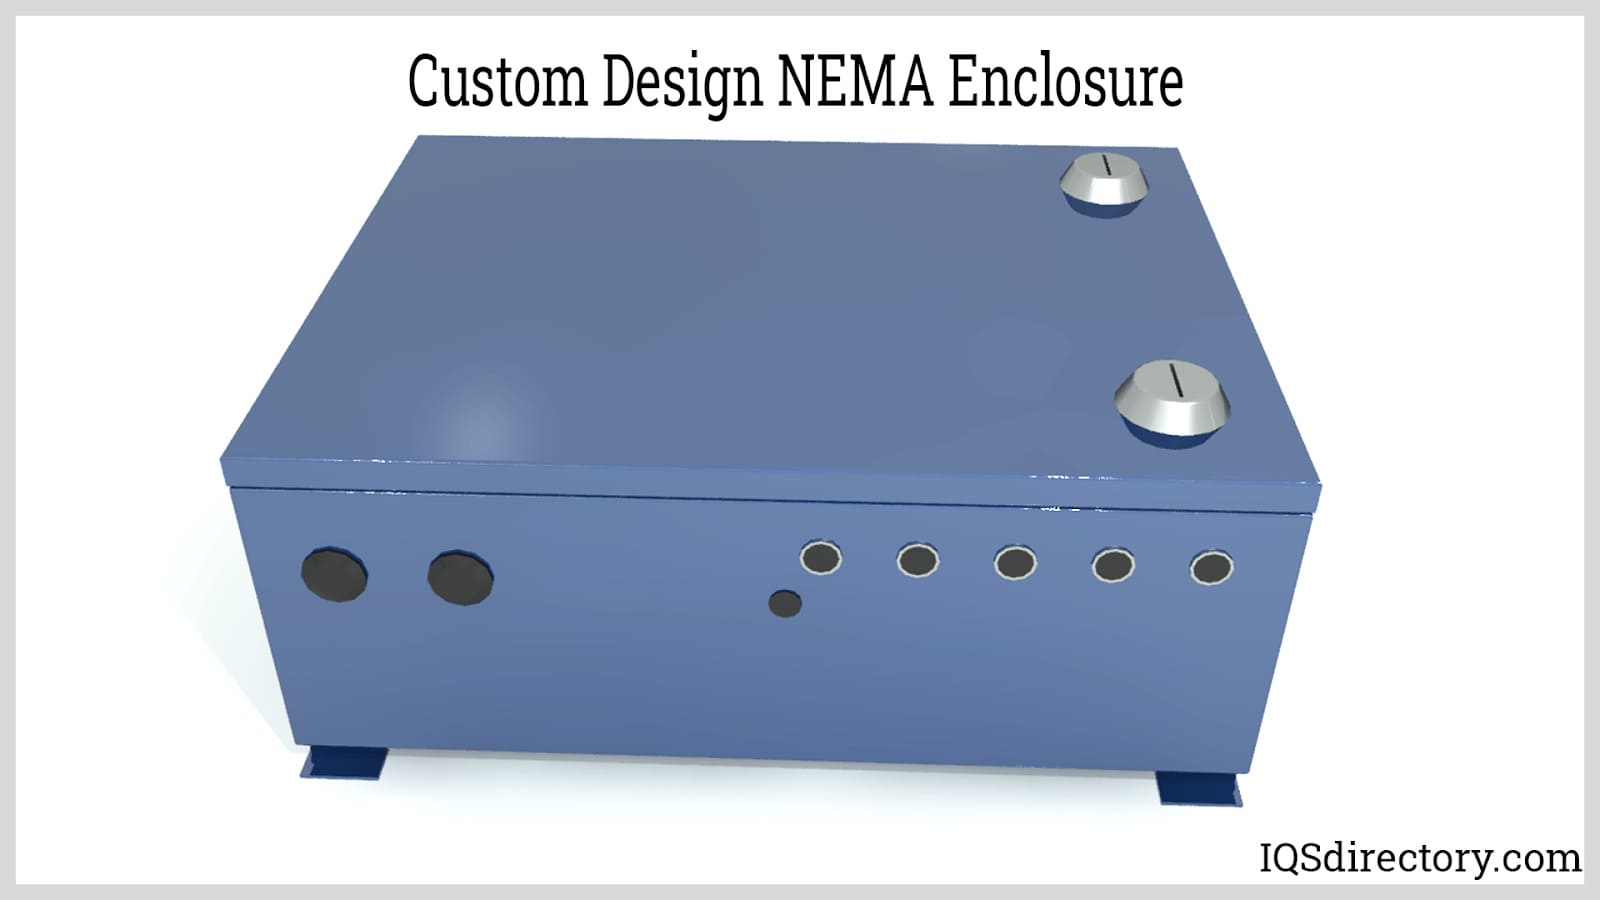 Custom Design NEMA Enclosure